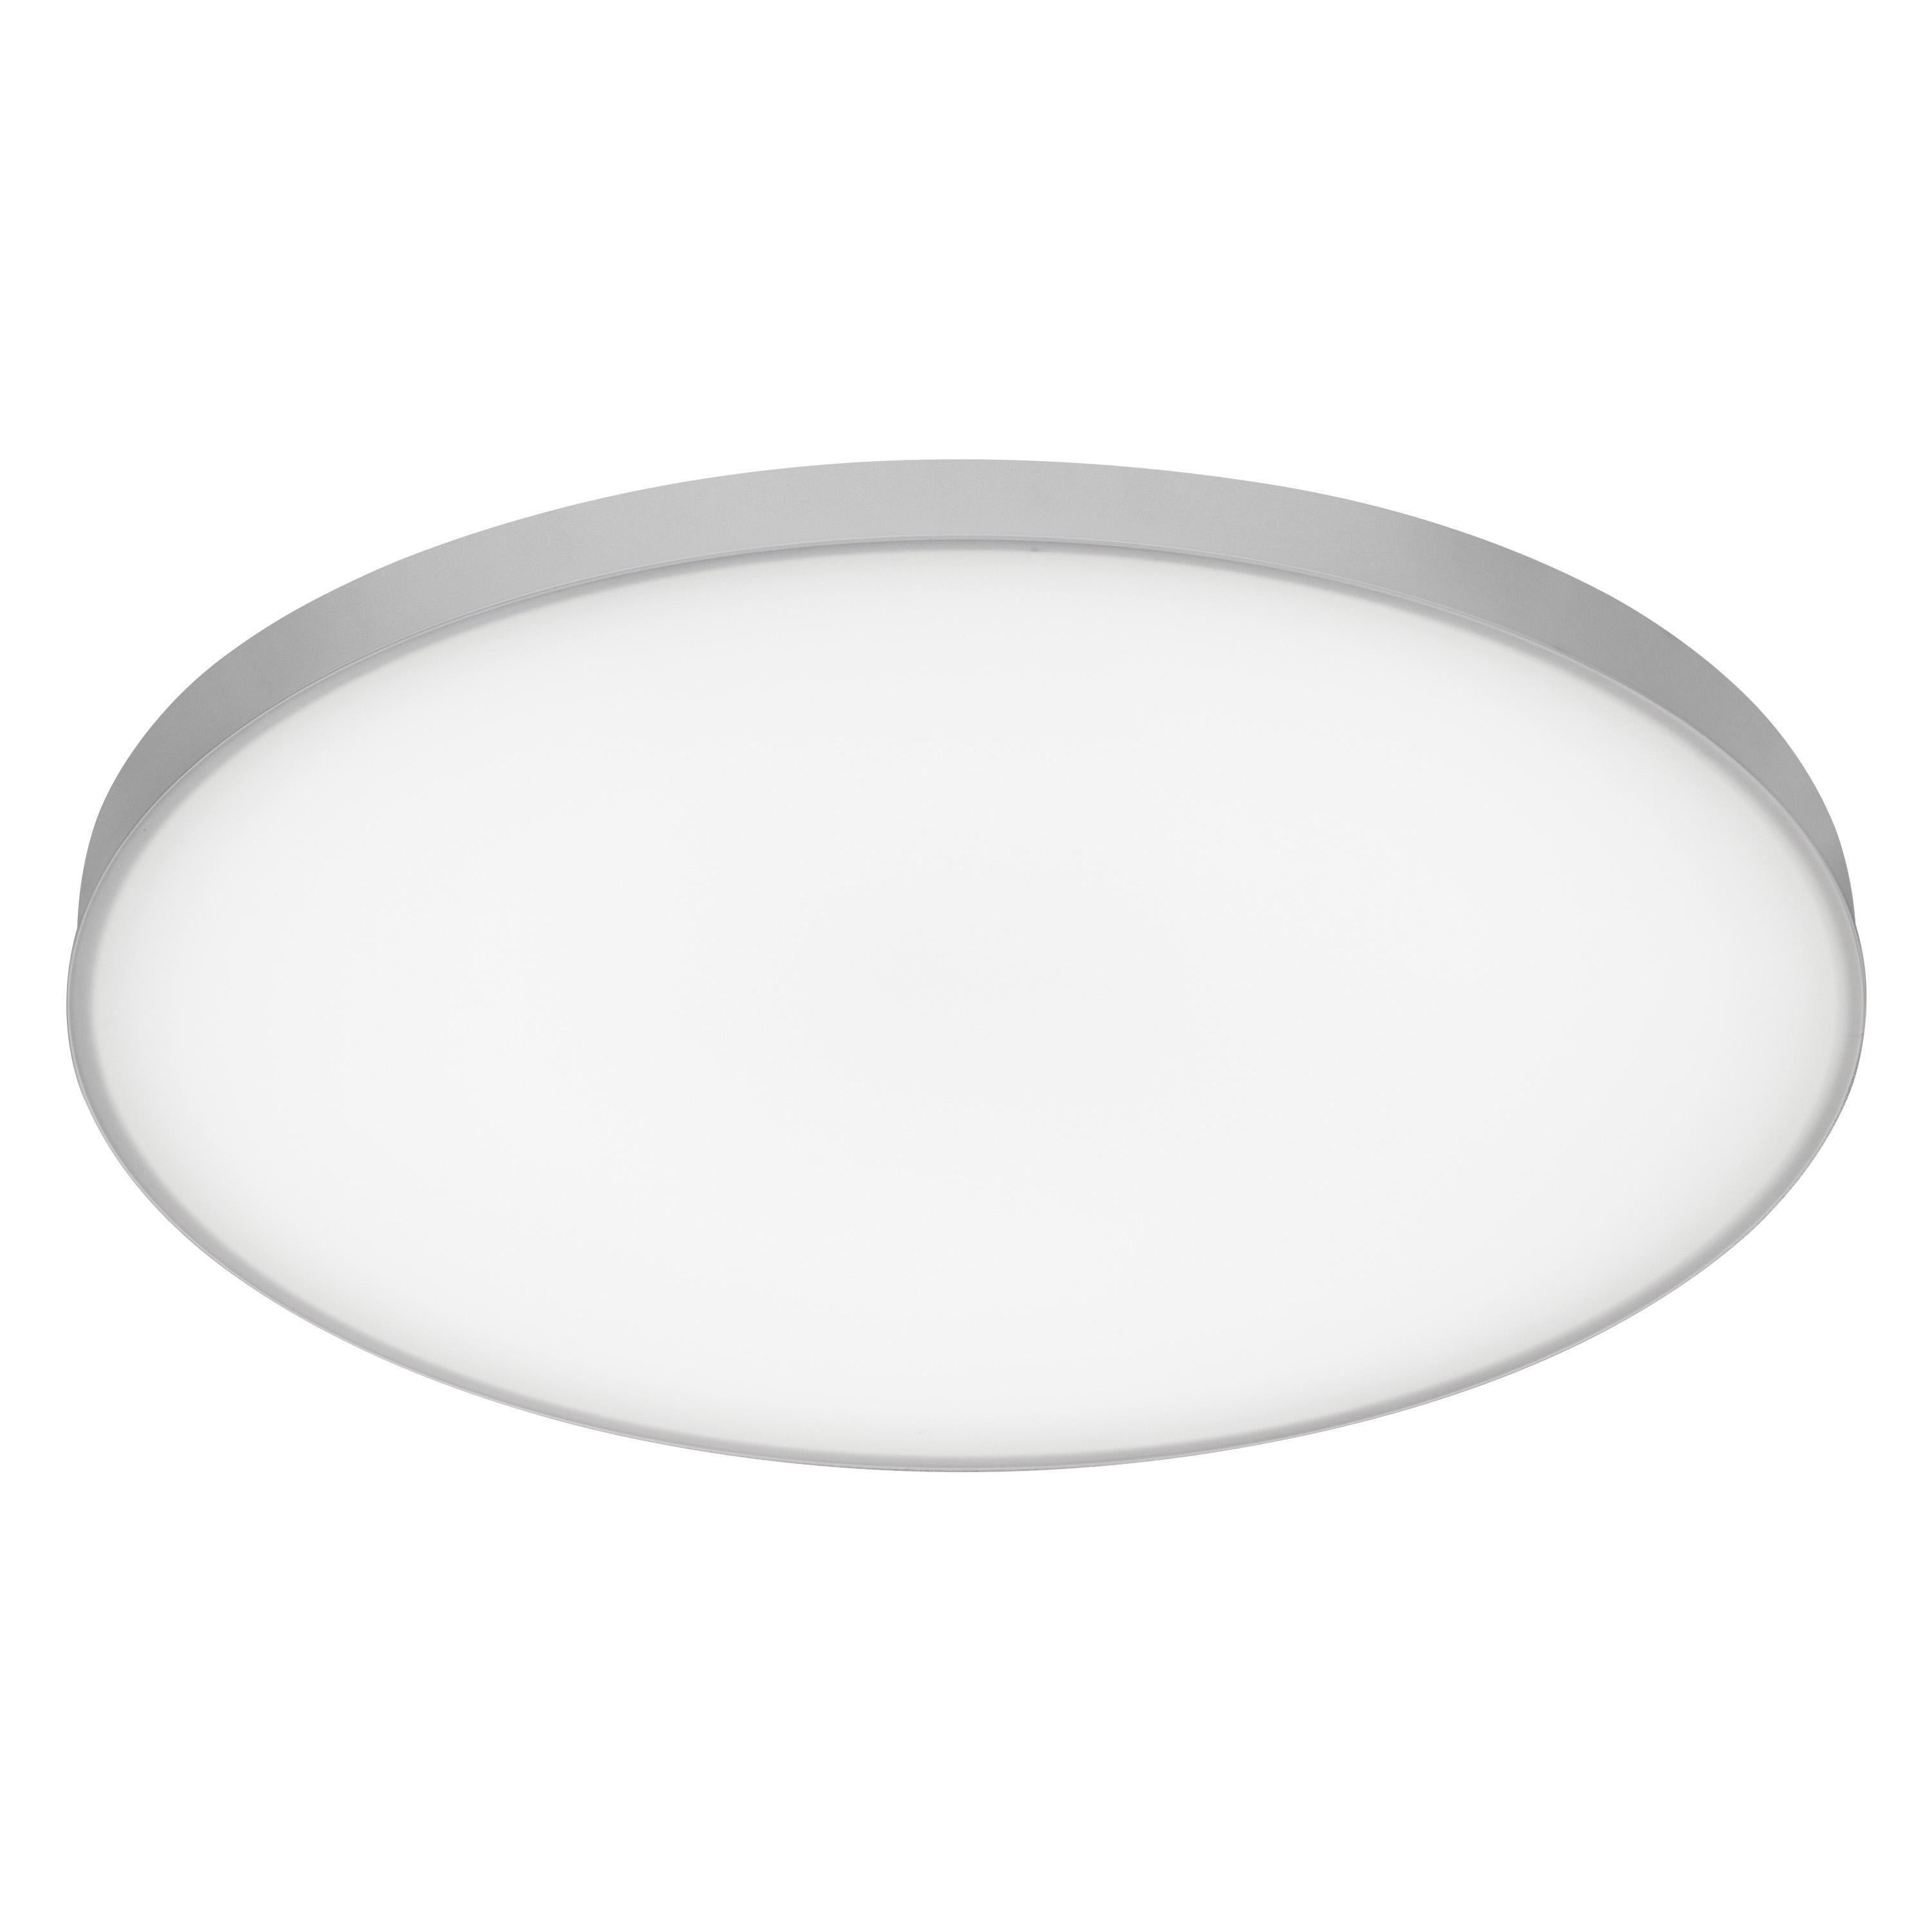 LED-DECKENLEUCHTE Planon Frameless 45/6,5 cm   - Weiß, Basics, Metall (45/6,5cm) - Ledvance